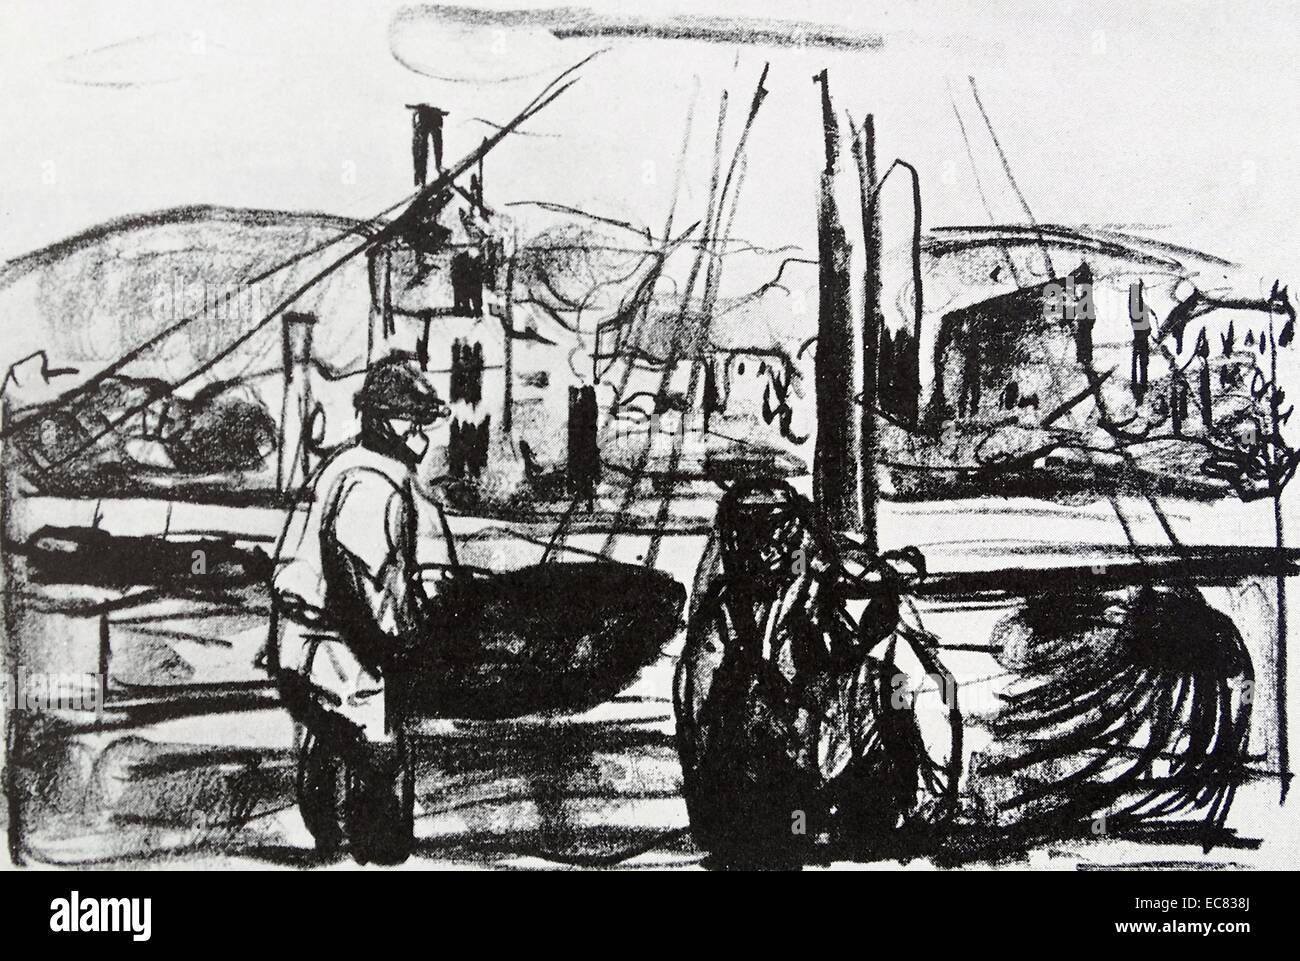 Lavoro dal titolo dopo il fuoco a Bergen (II) dall'artista norvegese Edvard Munch (1863-1944). Questo lavoro è stato prodotto nel 1916. Foto Stock